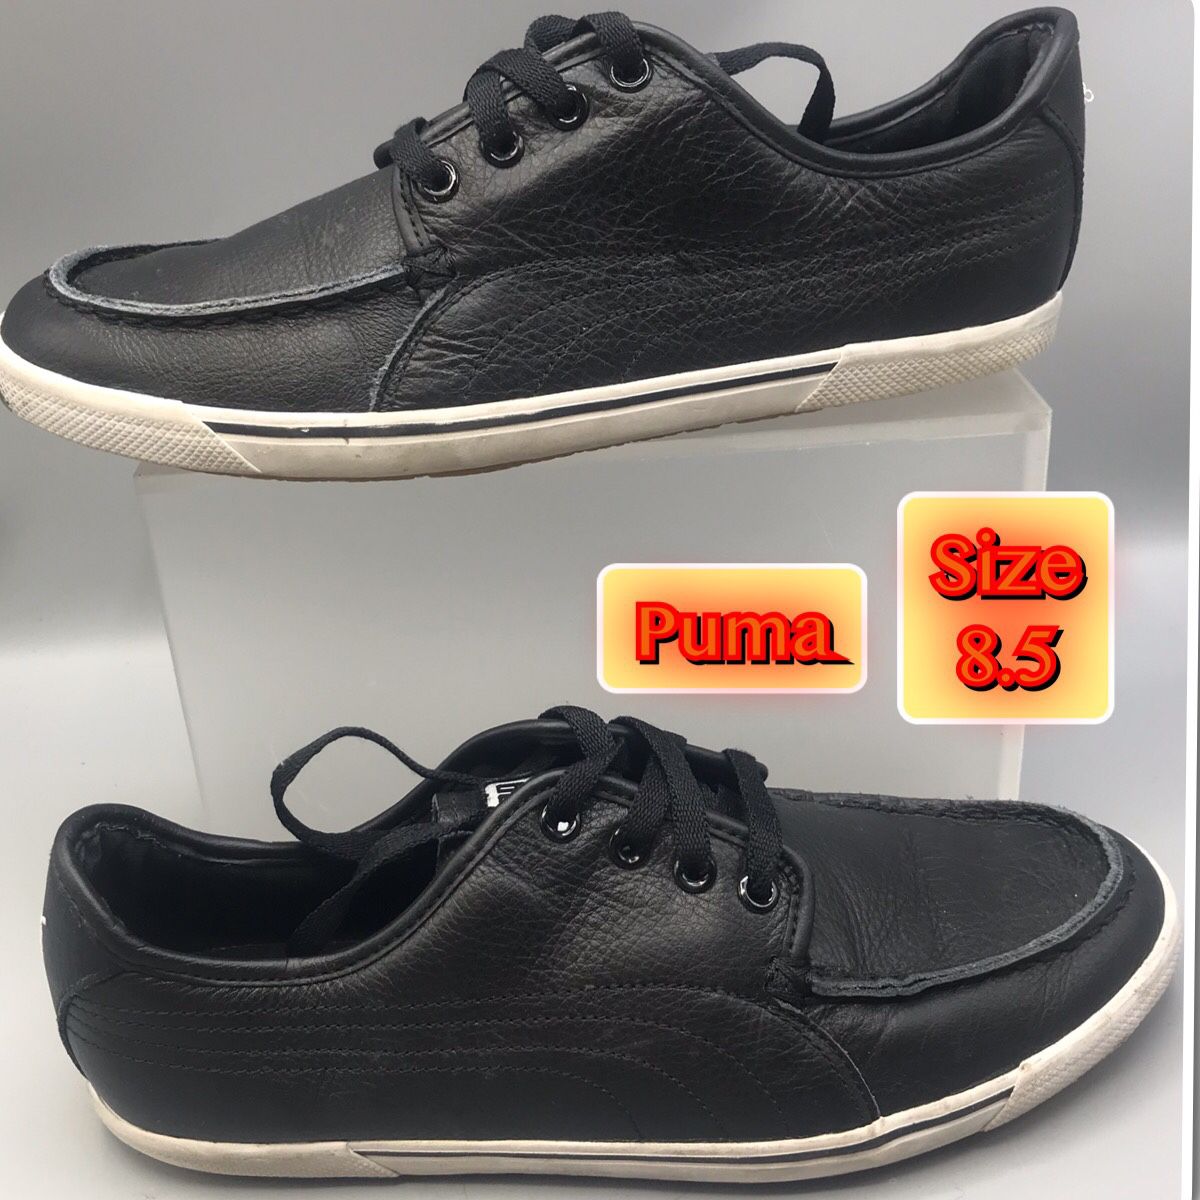 Puma Men’s Benecio Mocc Lace Up Shoes Size 8.5